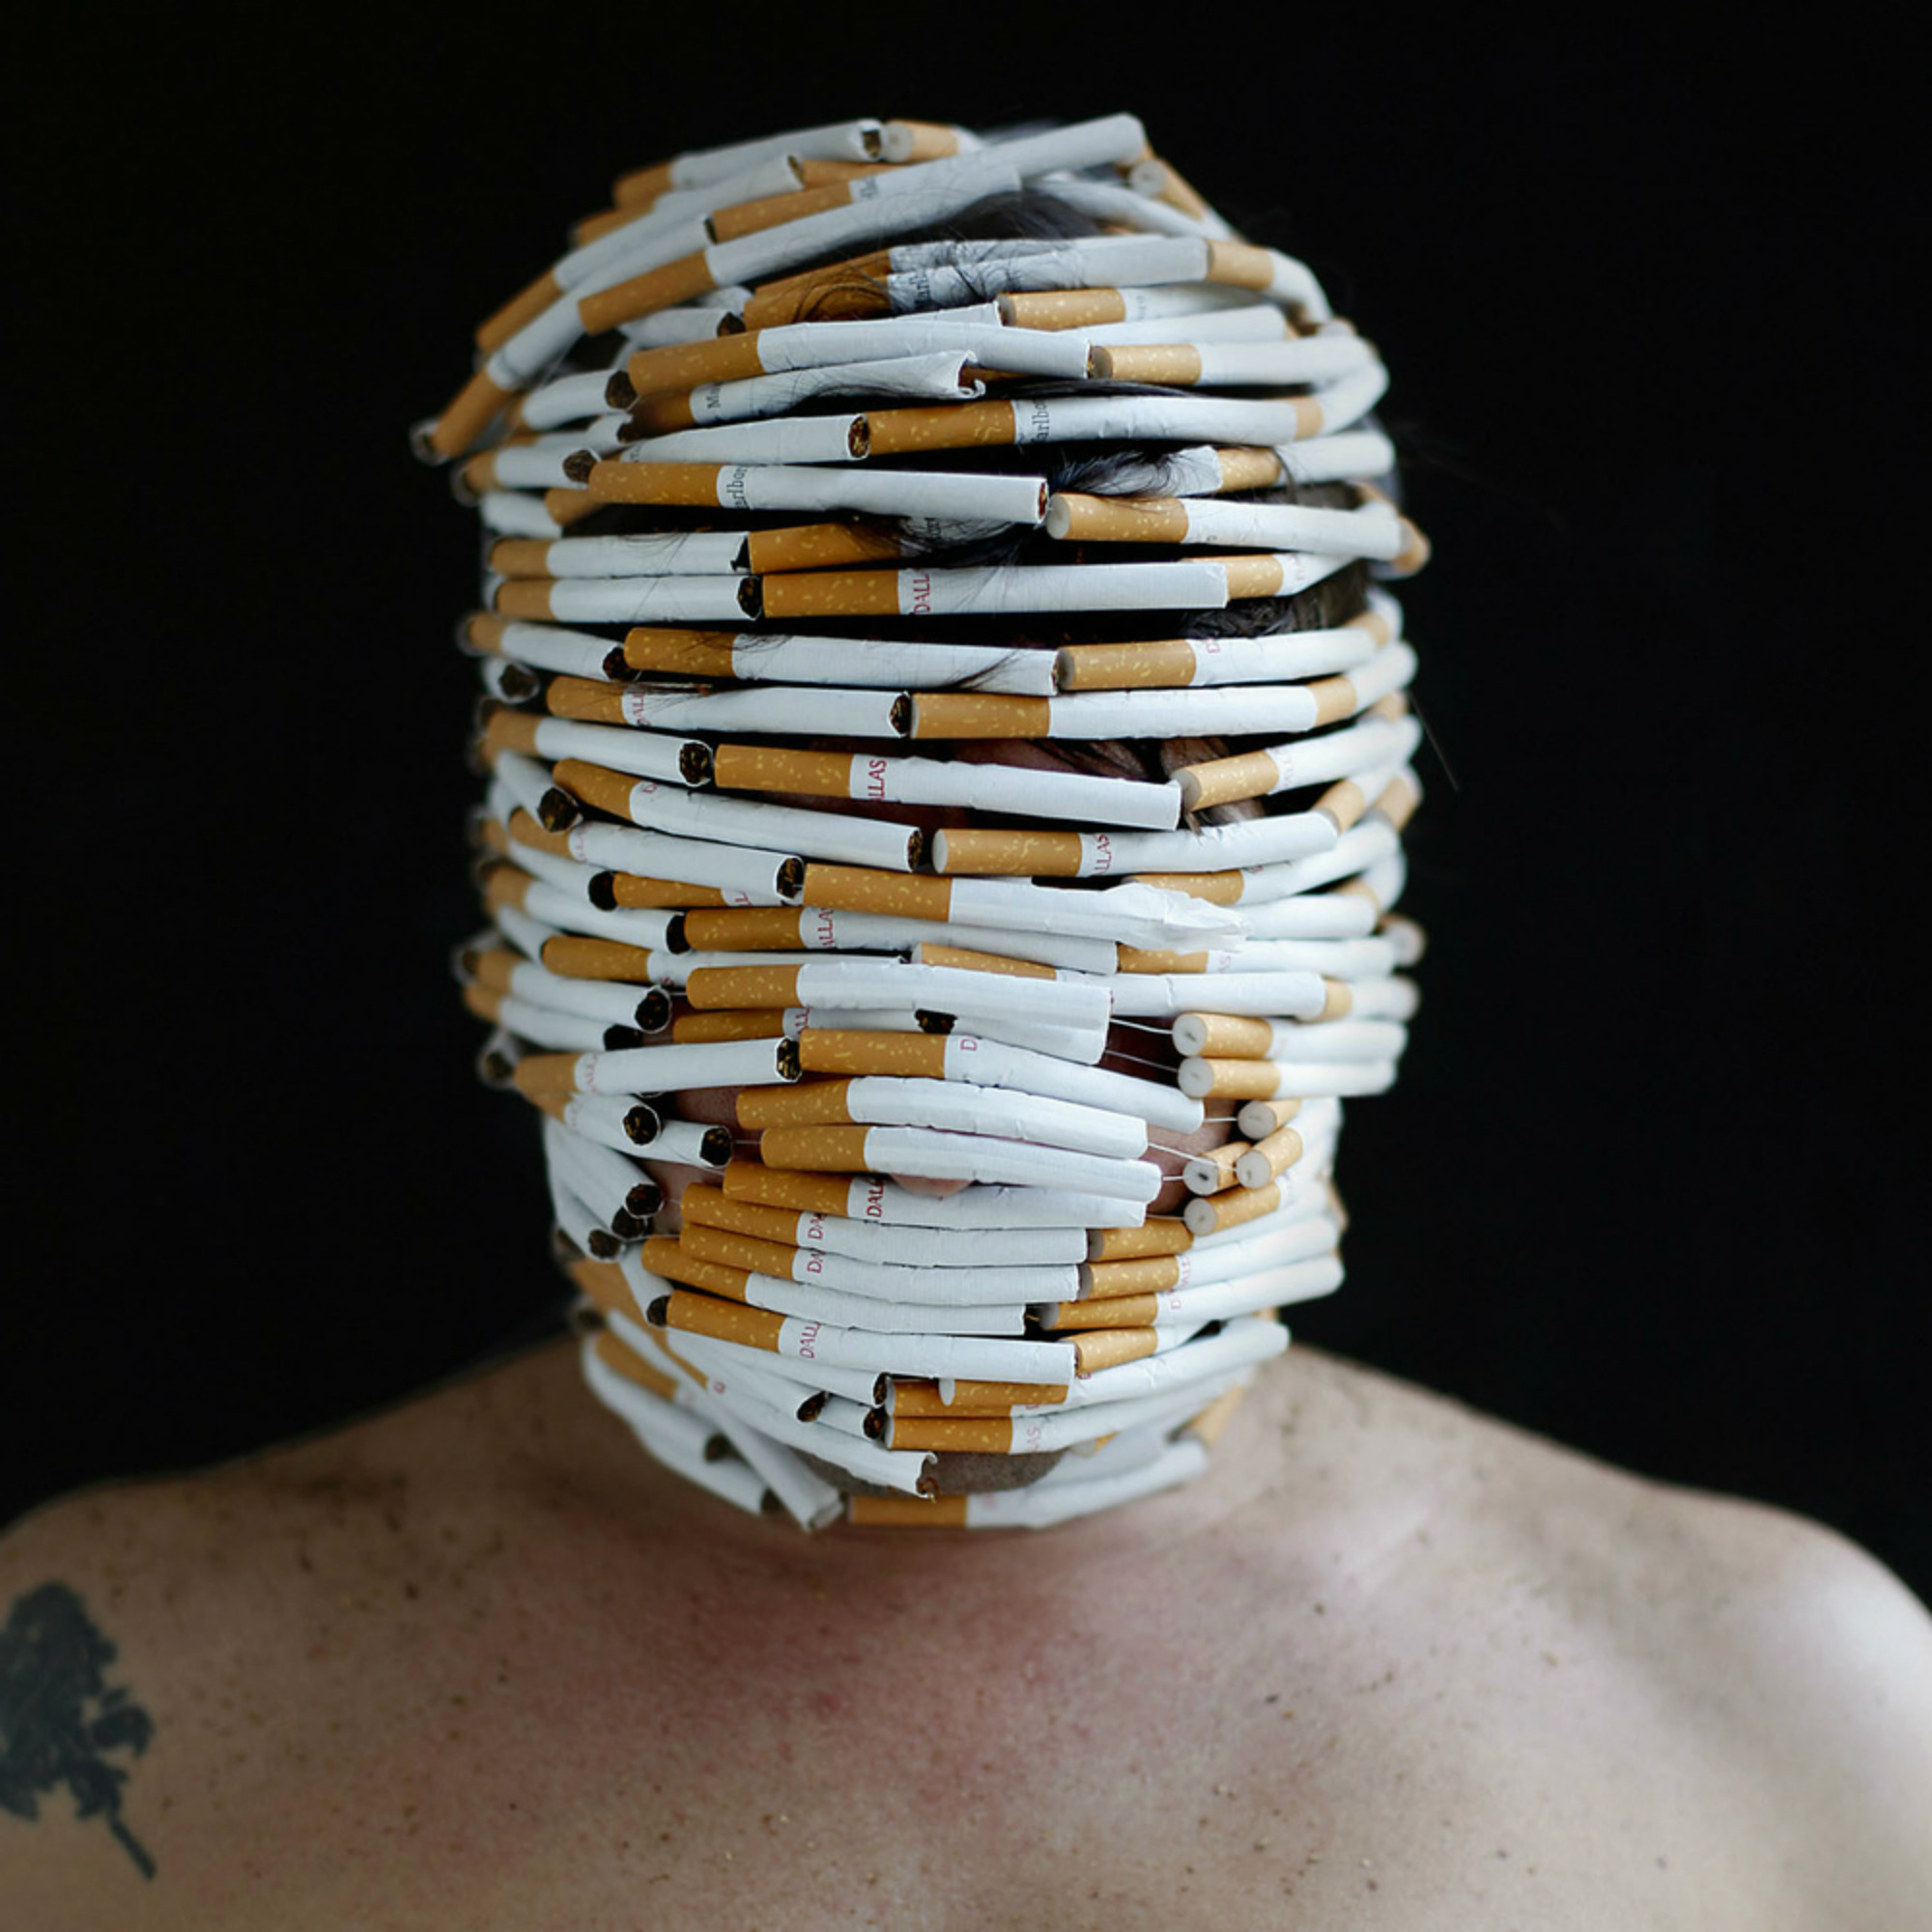 edu monteiro photography portrait gross junk body cigarette 